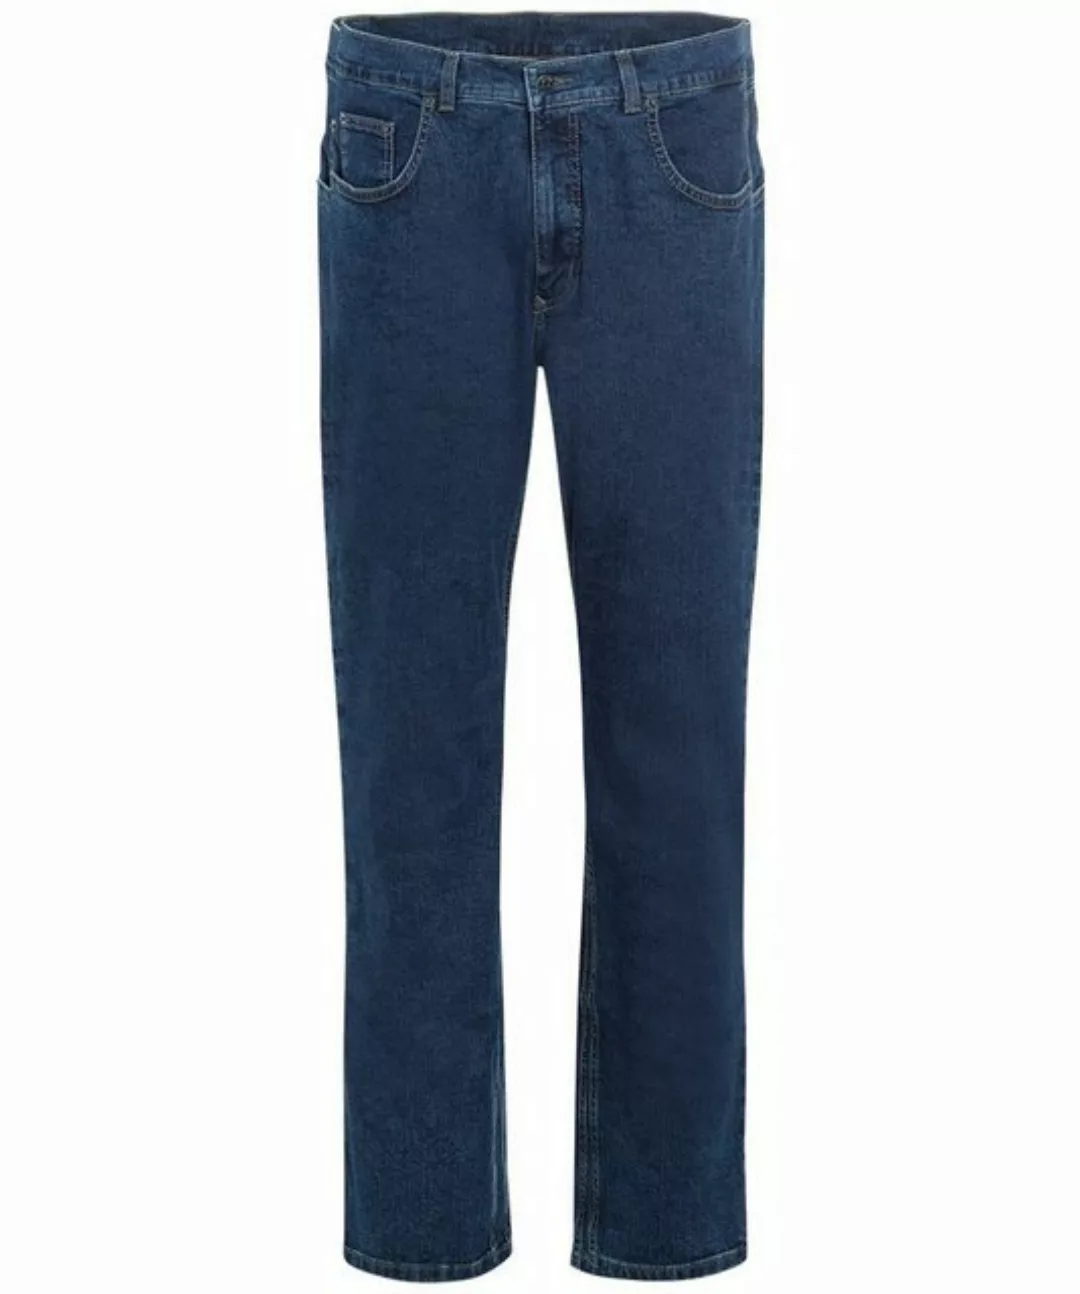 Pioneer Authentic Jeans 5-Pocket-Jeans PIONEER RON dark blue stonewash 1144 günstig online kaufen